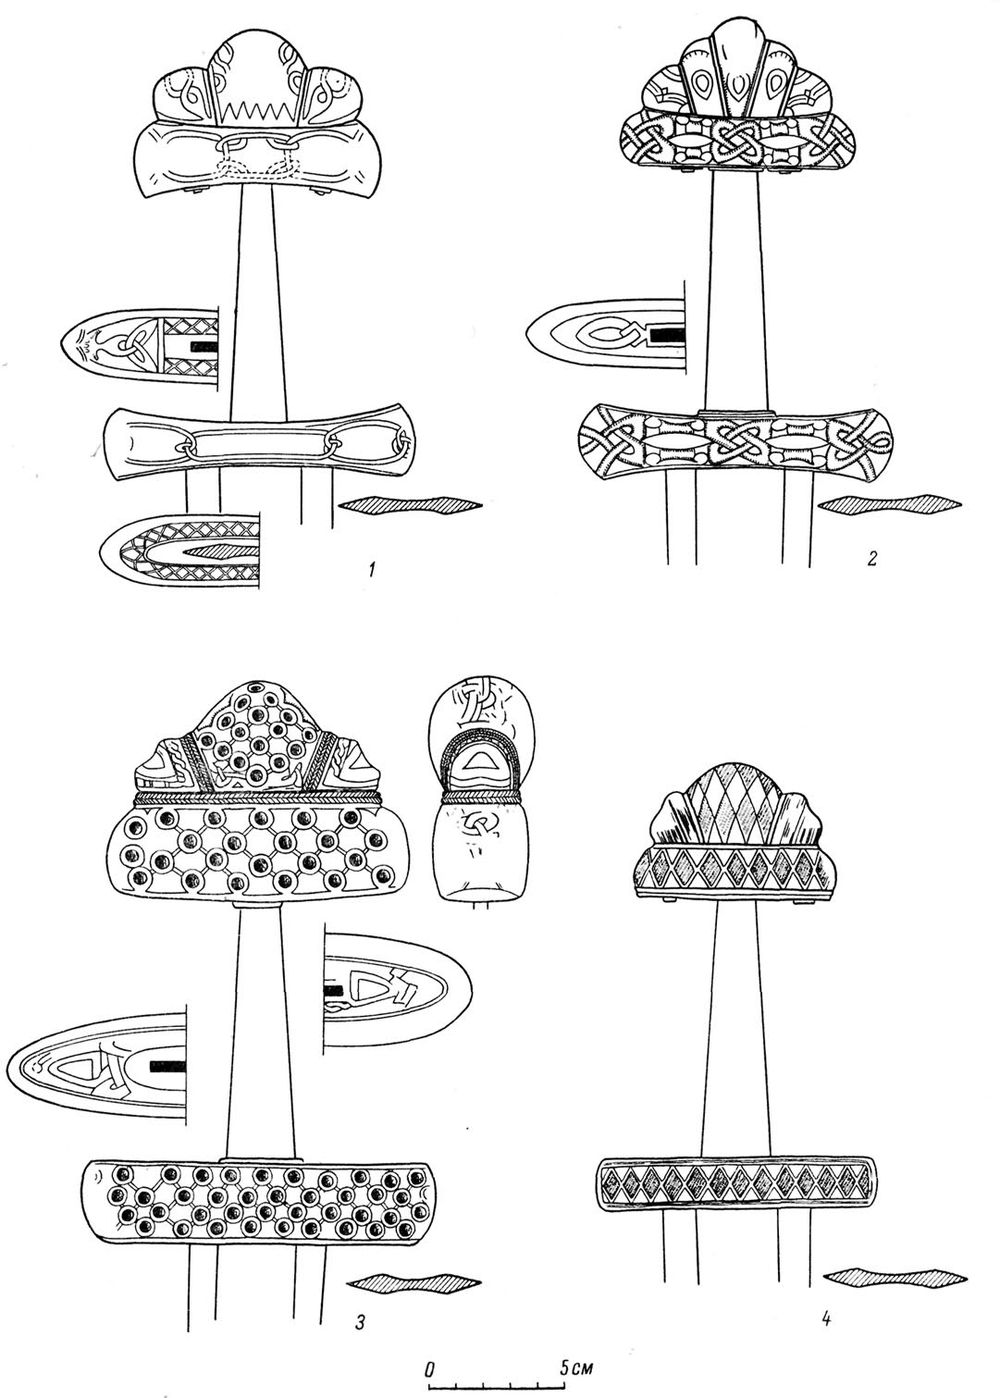 Petersen type Viking swords